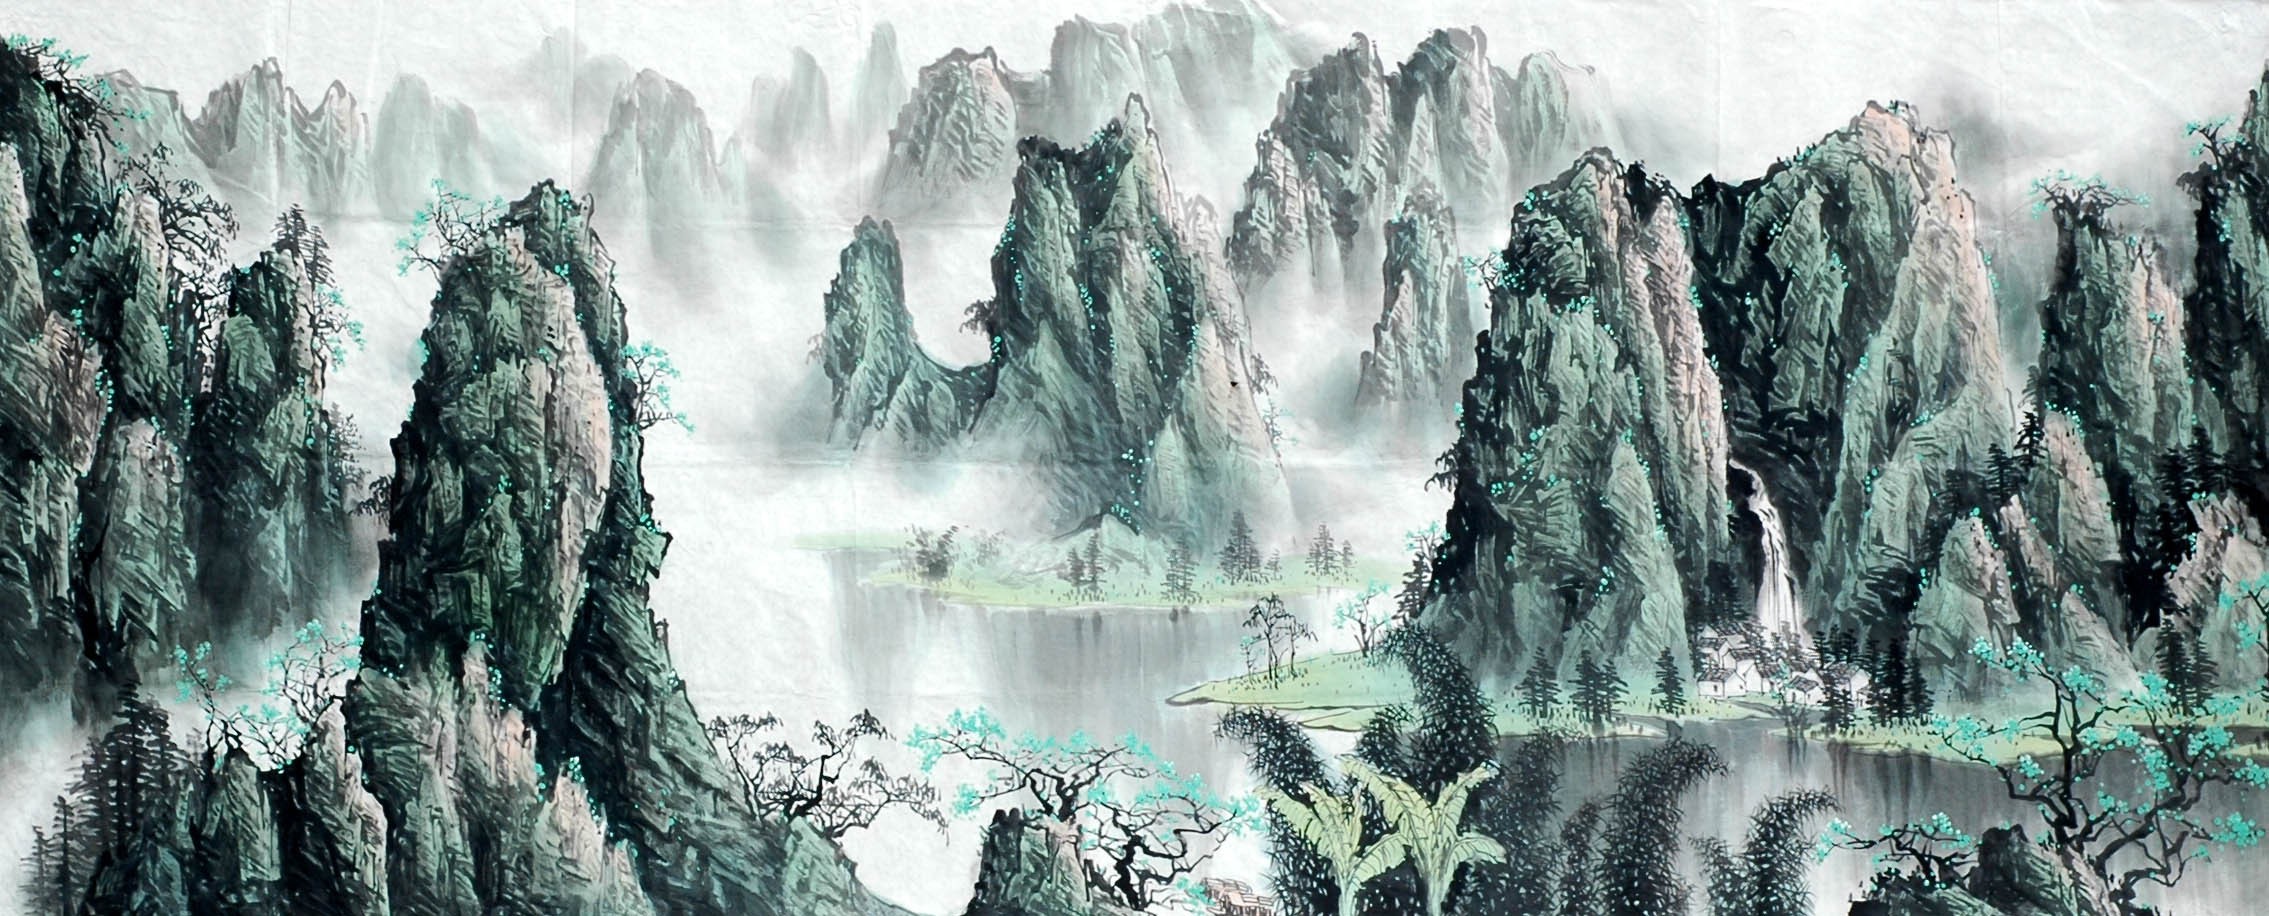 Chinese Landscape Painting - CNAG009151